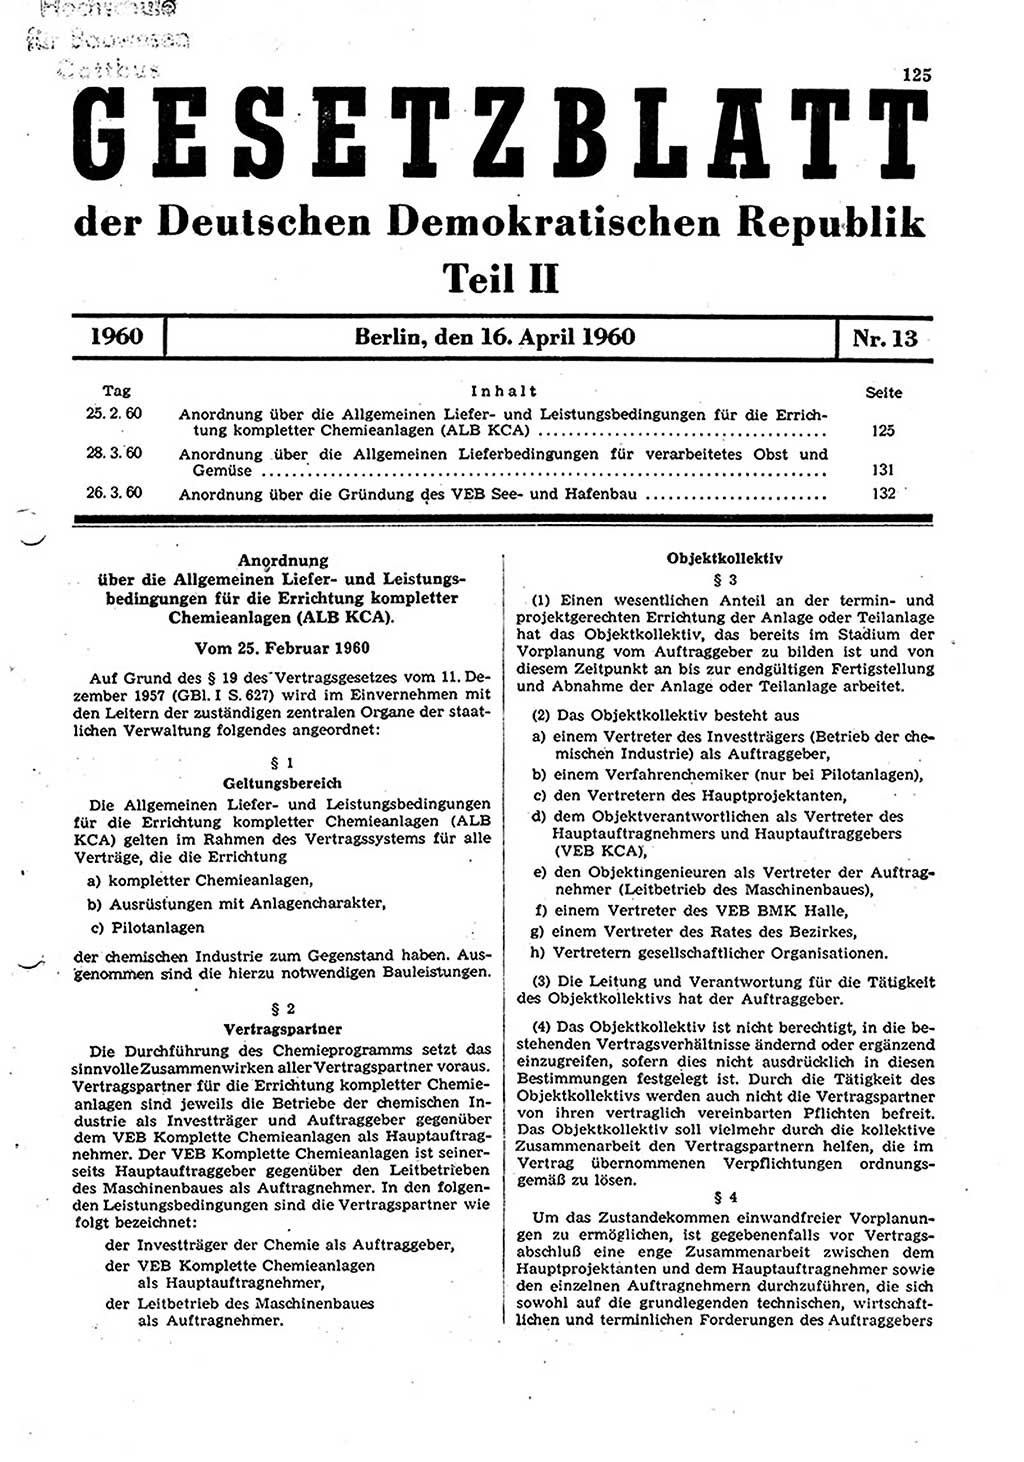 Gesetzblatt (GBl.) der Deutschen Demokratischen Republik (DDR) Teil ⅠⅠ 1960, Seite 125 (GBl. DDR ⅠⅠ 1960, S. 125)